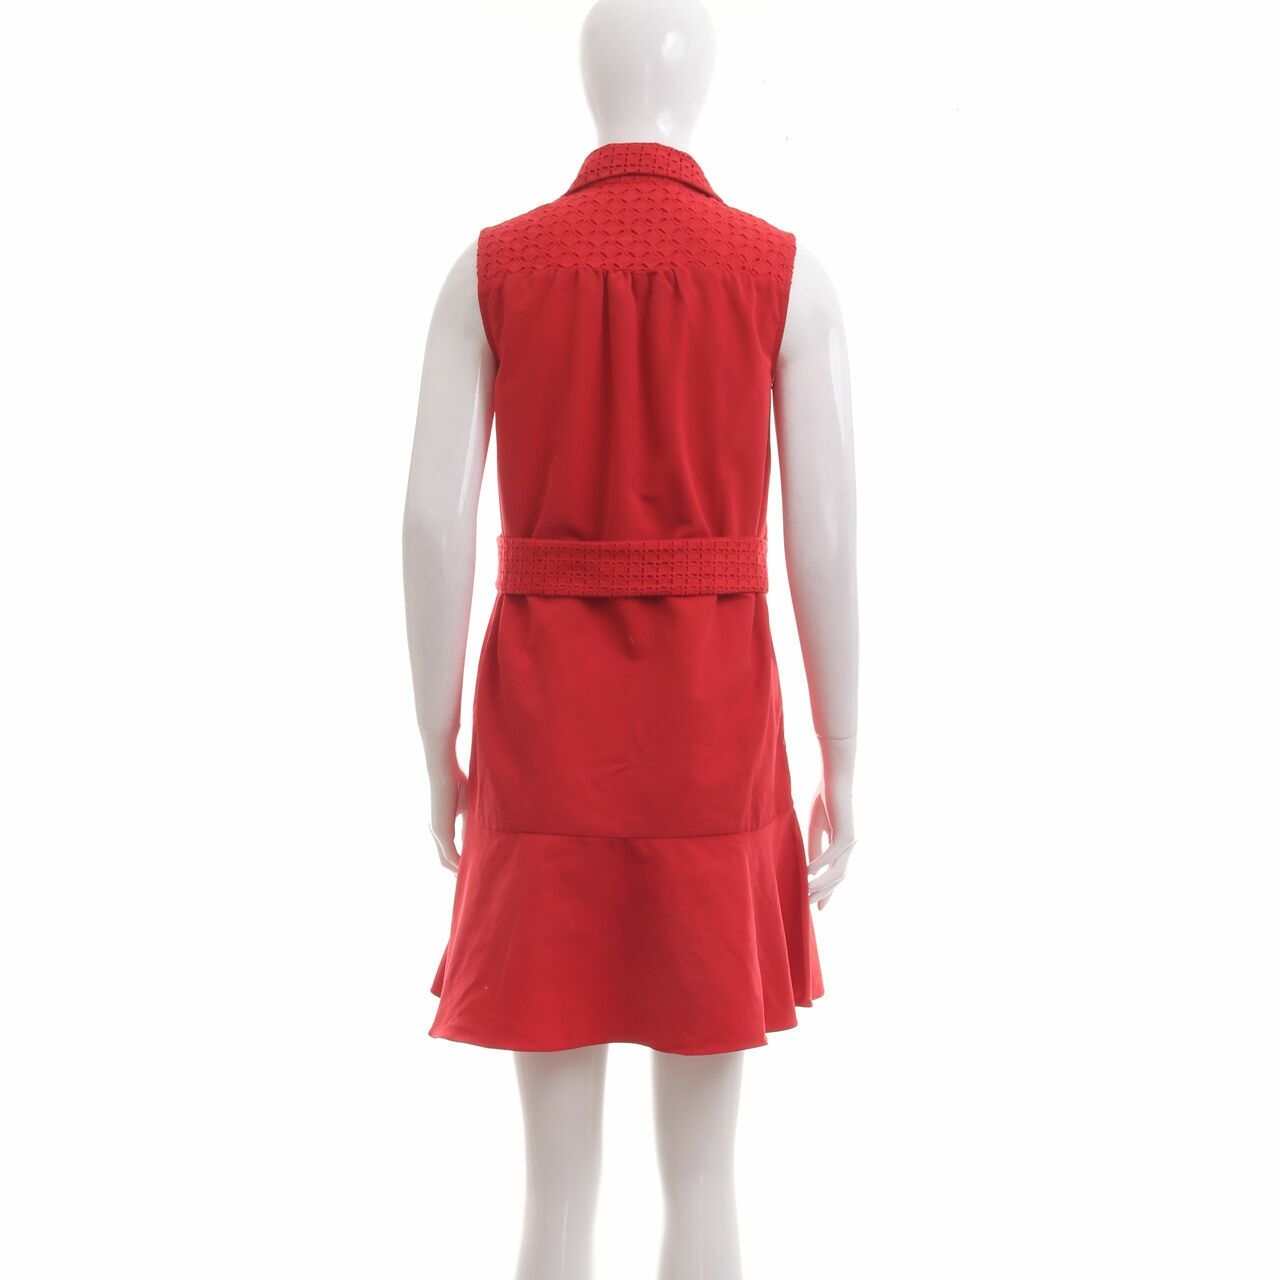 Saturday Club Red Mini Dress